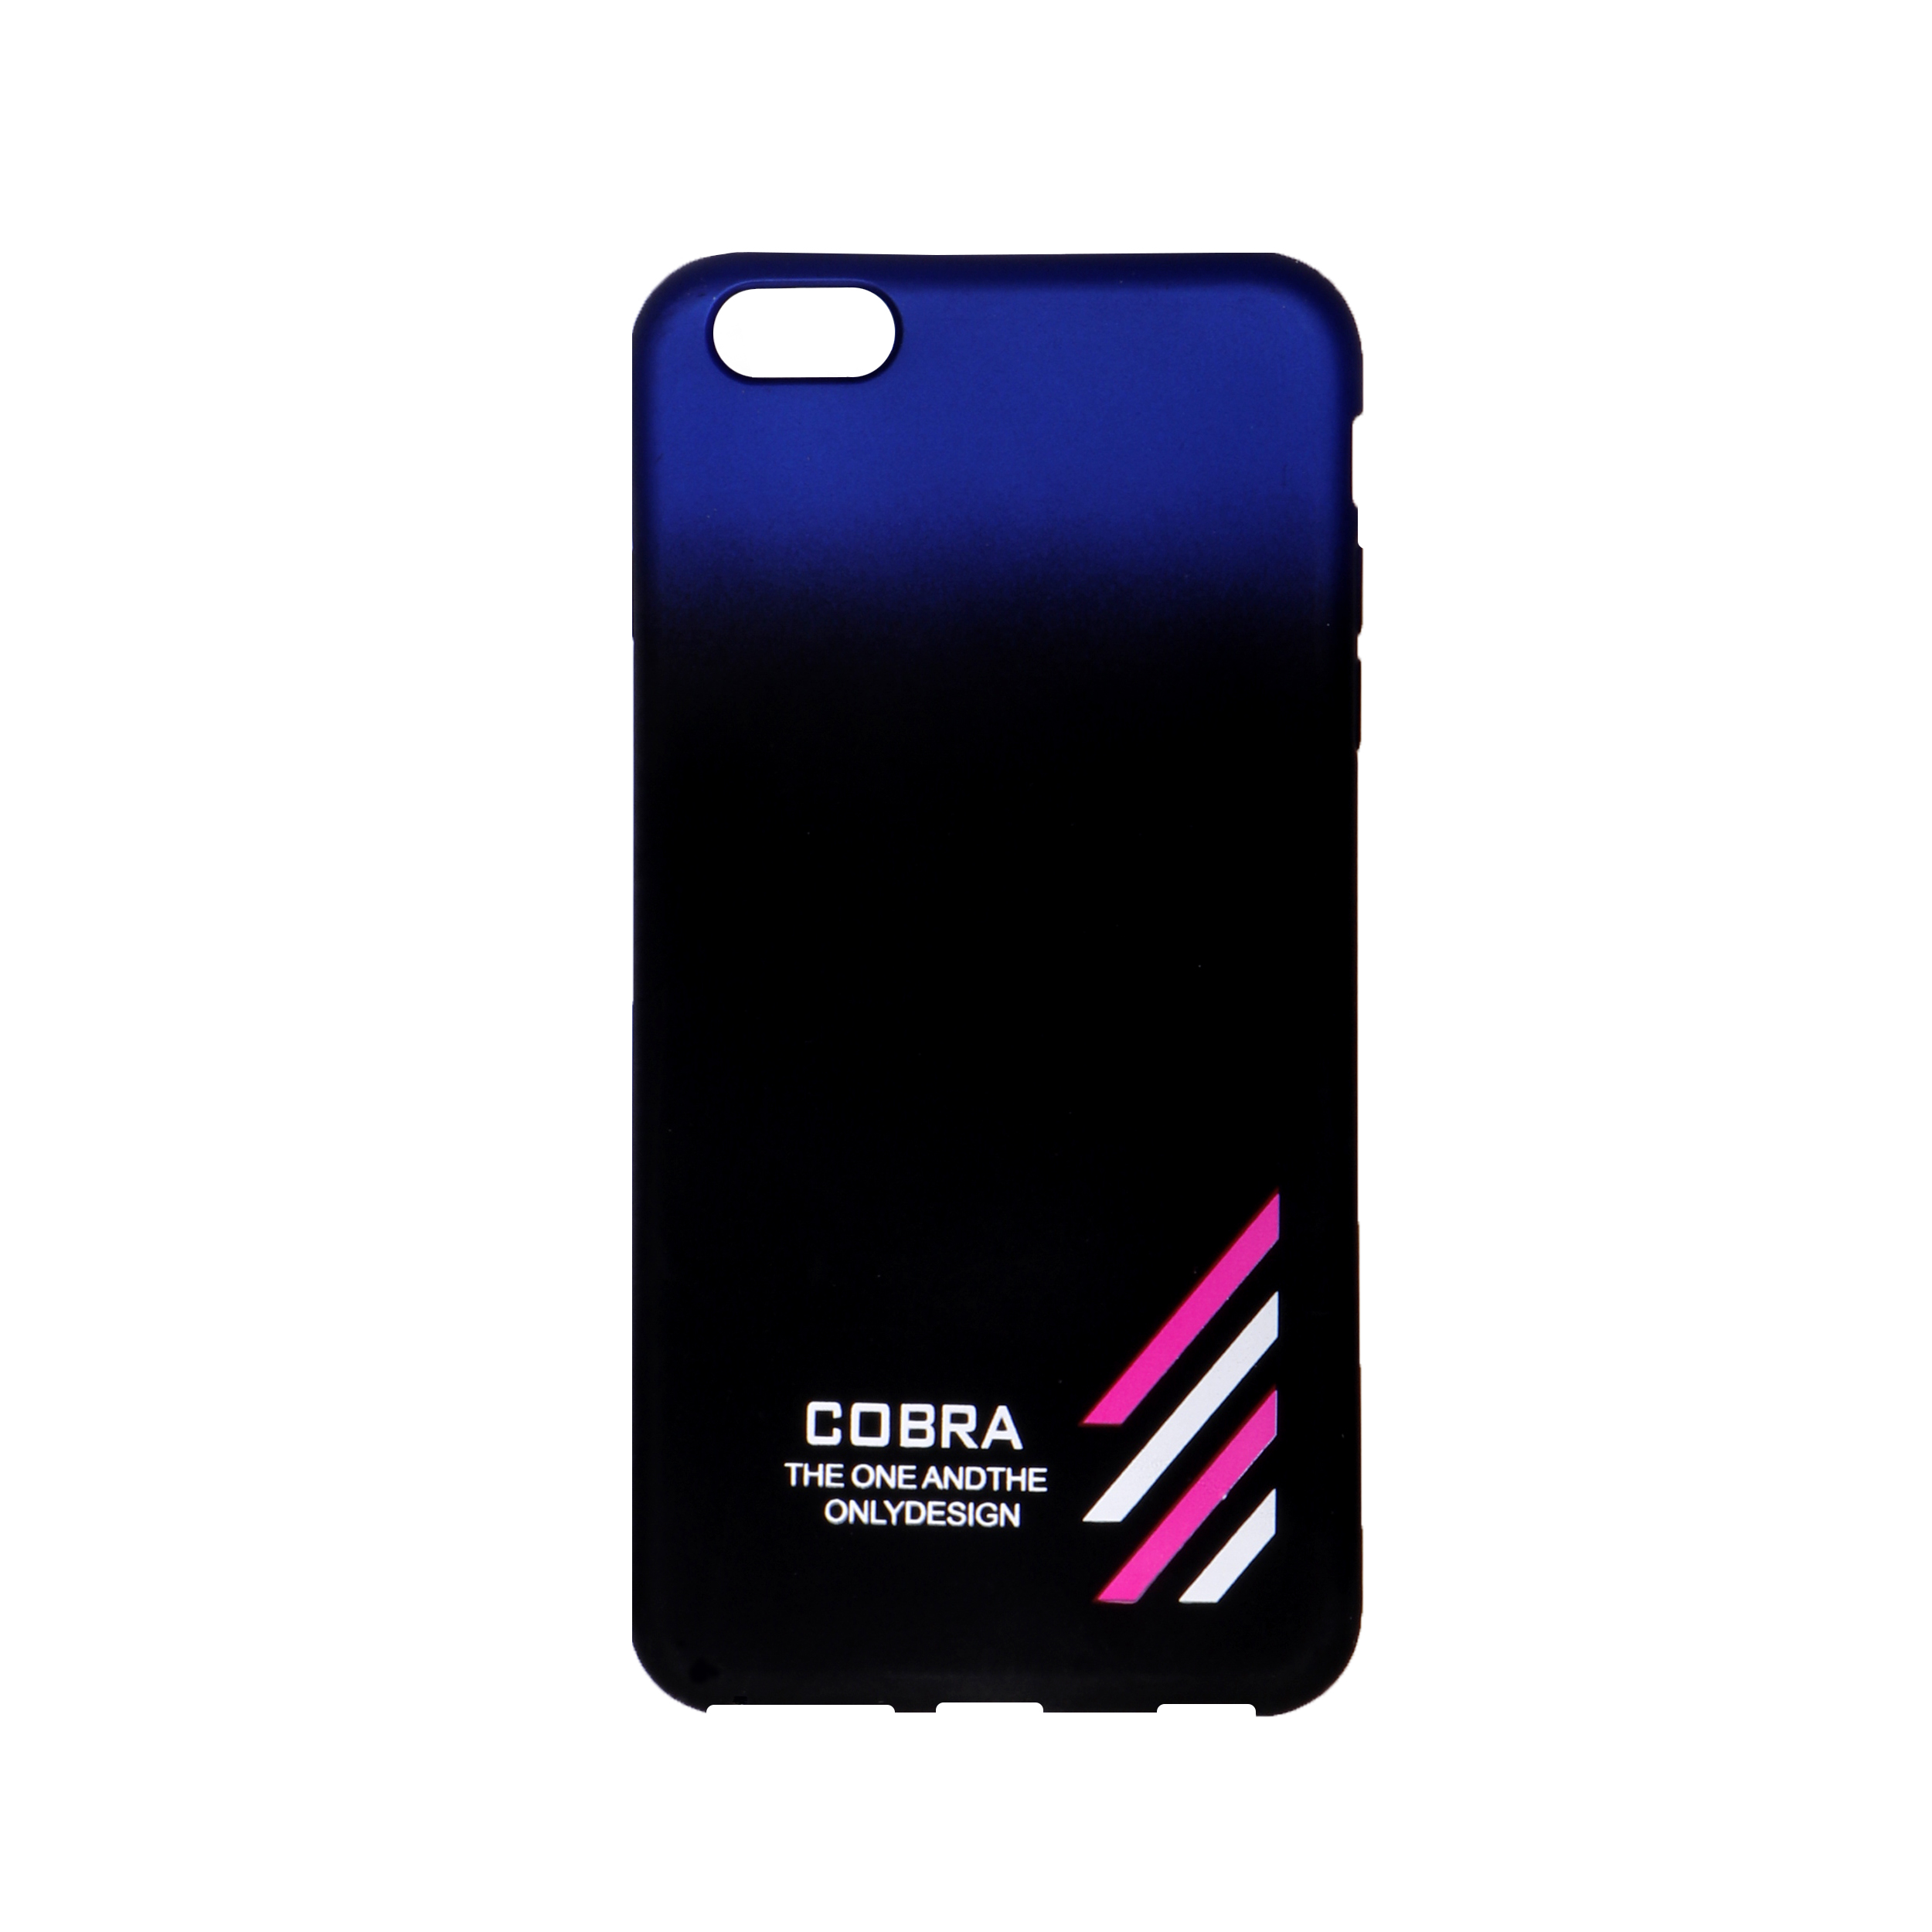 کاور کبرا مدل U9 مناسب برای گوشی موبایل اپل Iphone 5 / 5s / se